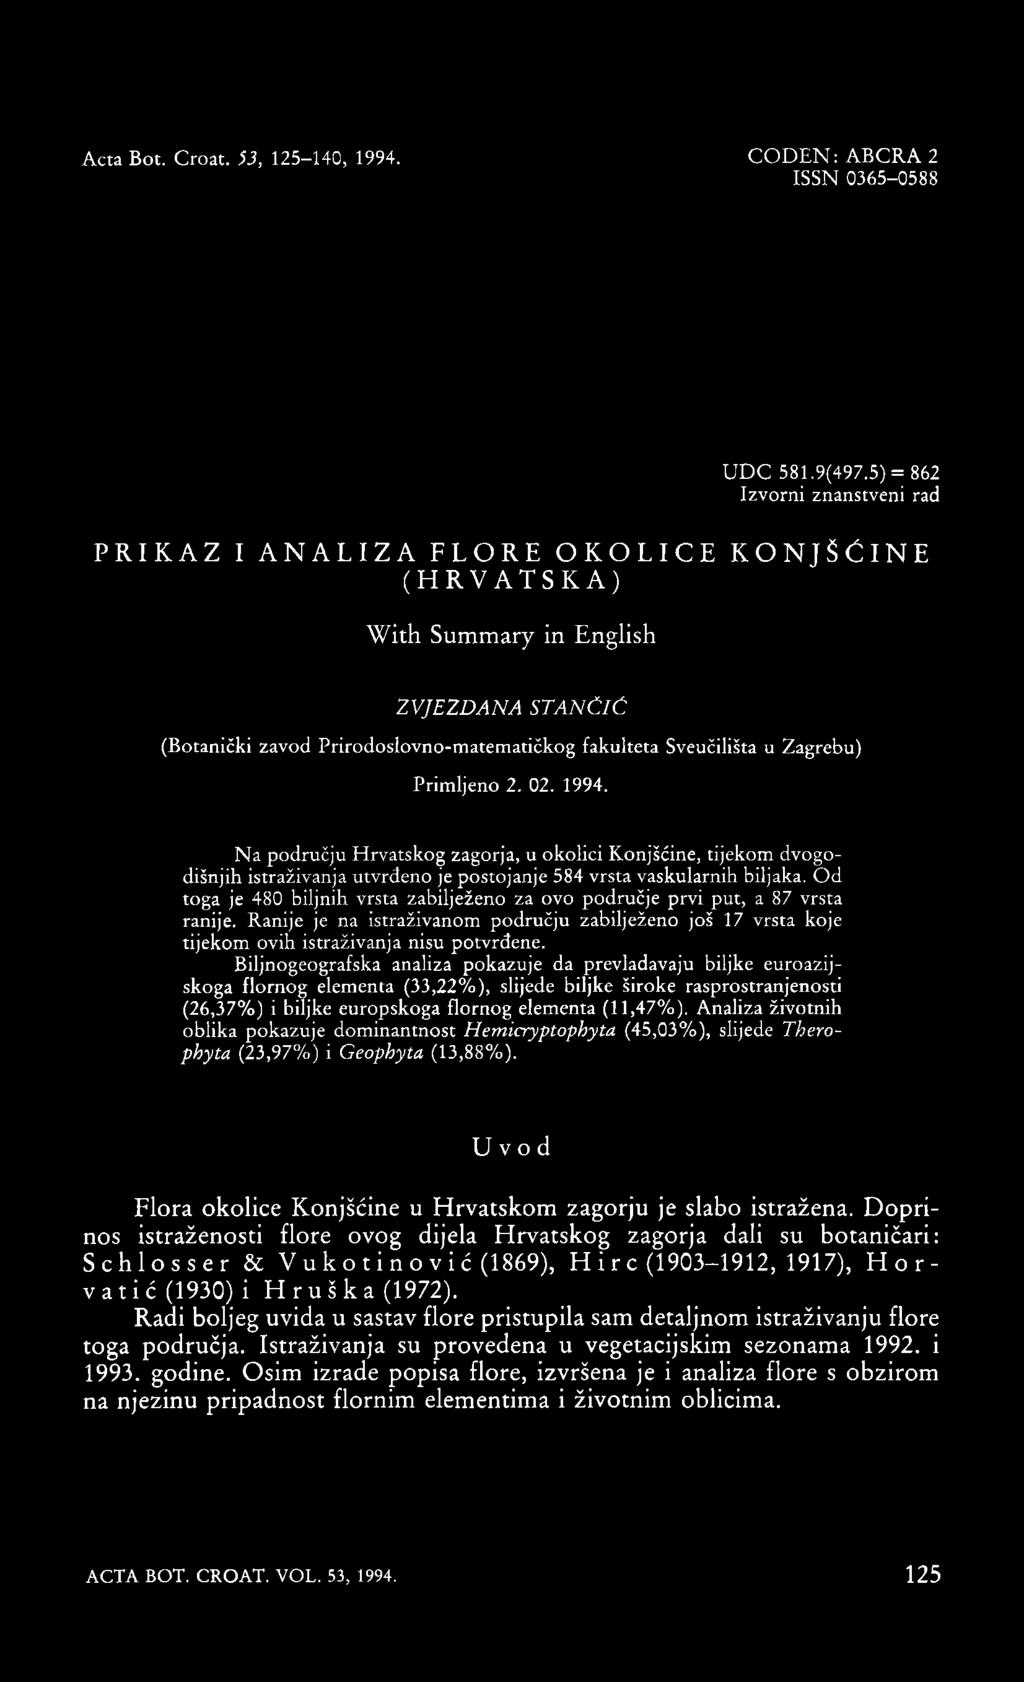 02. 1994. Na području Hrvatskog zagorja, u okolici Konjšćine, tijekom dvogodišnjih istraživanja utvrđeno je postojanje 584 vrsta vaskularnih biljaka.